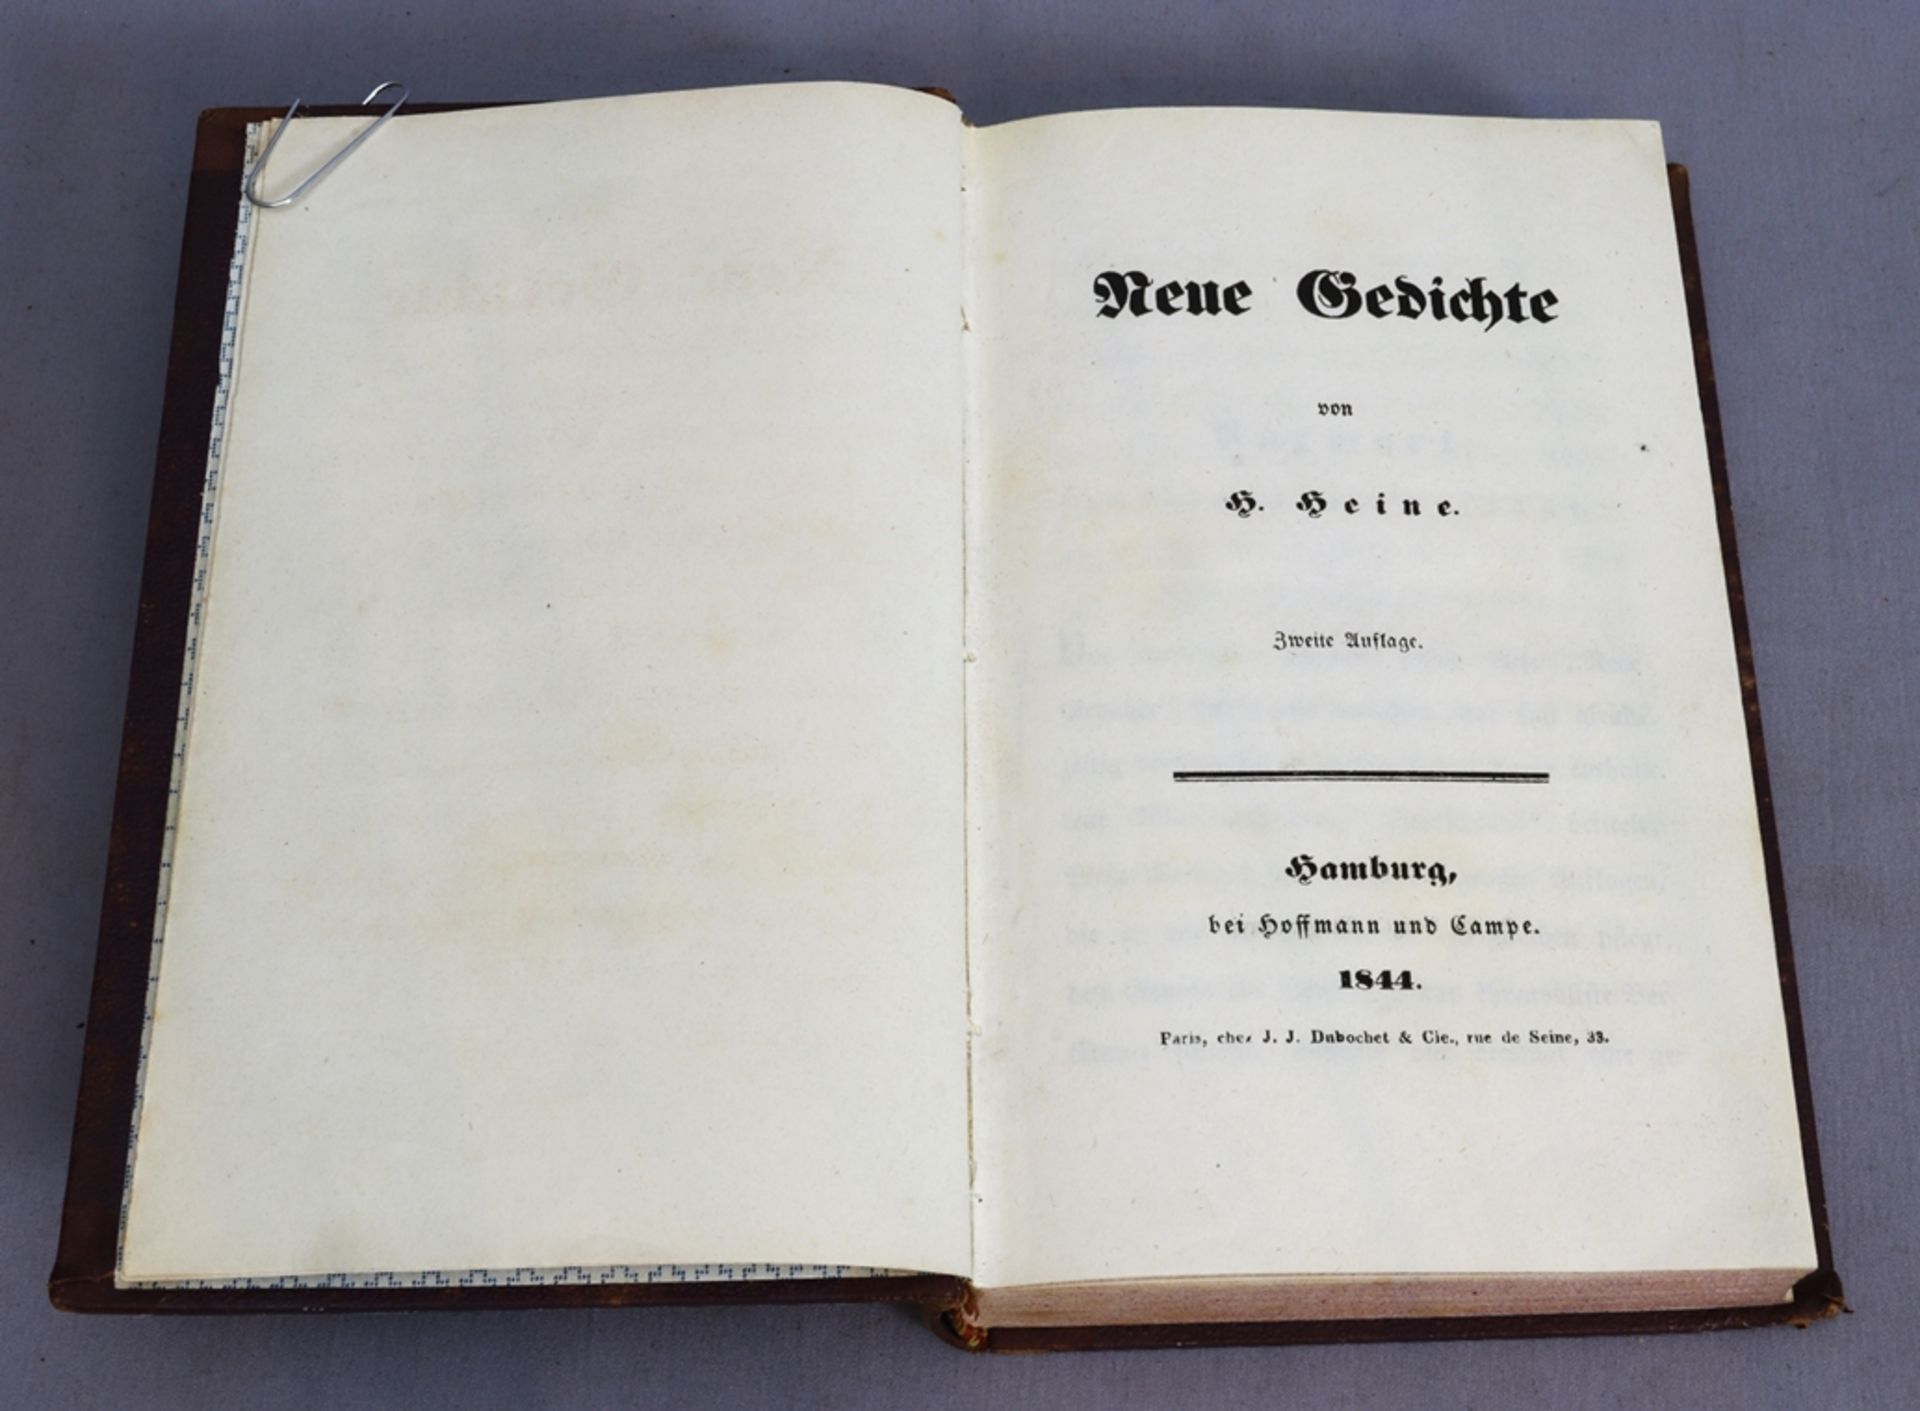 New Poems by Heinrich Heine, Hamburg 1844 - Image 2 of 3